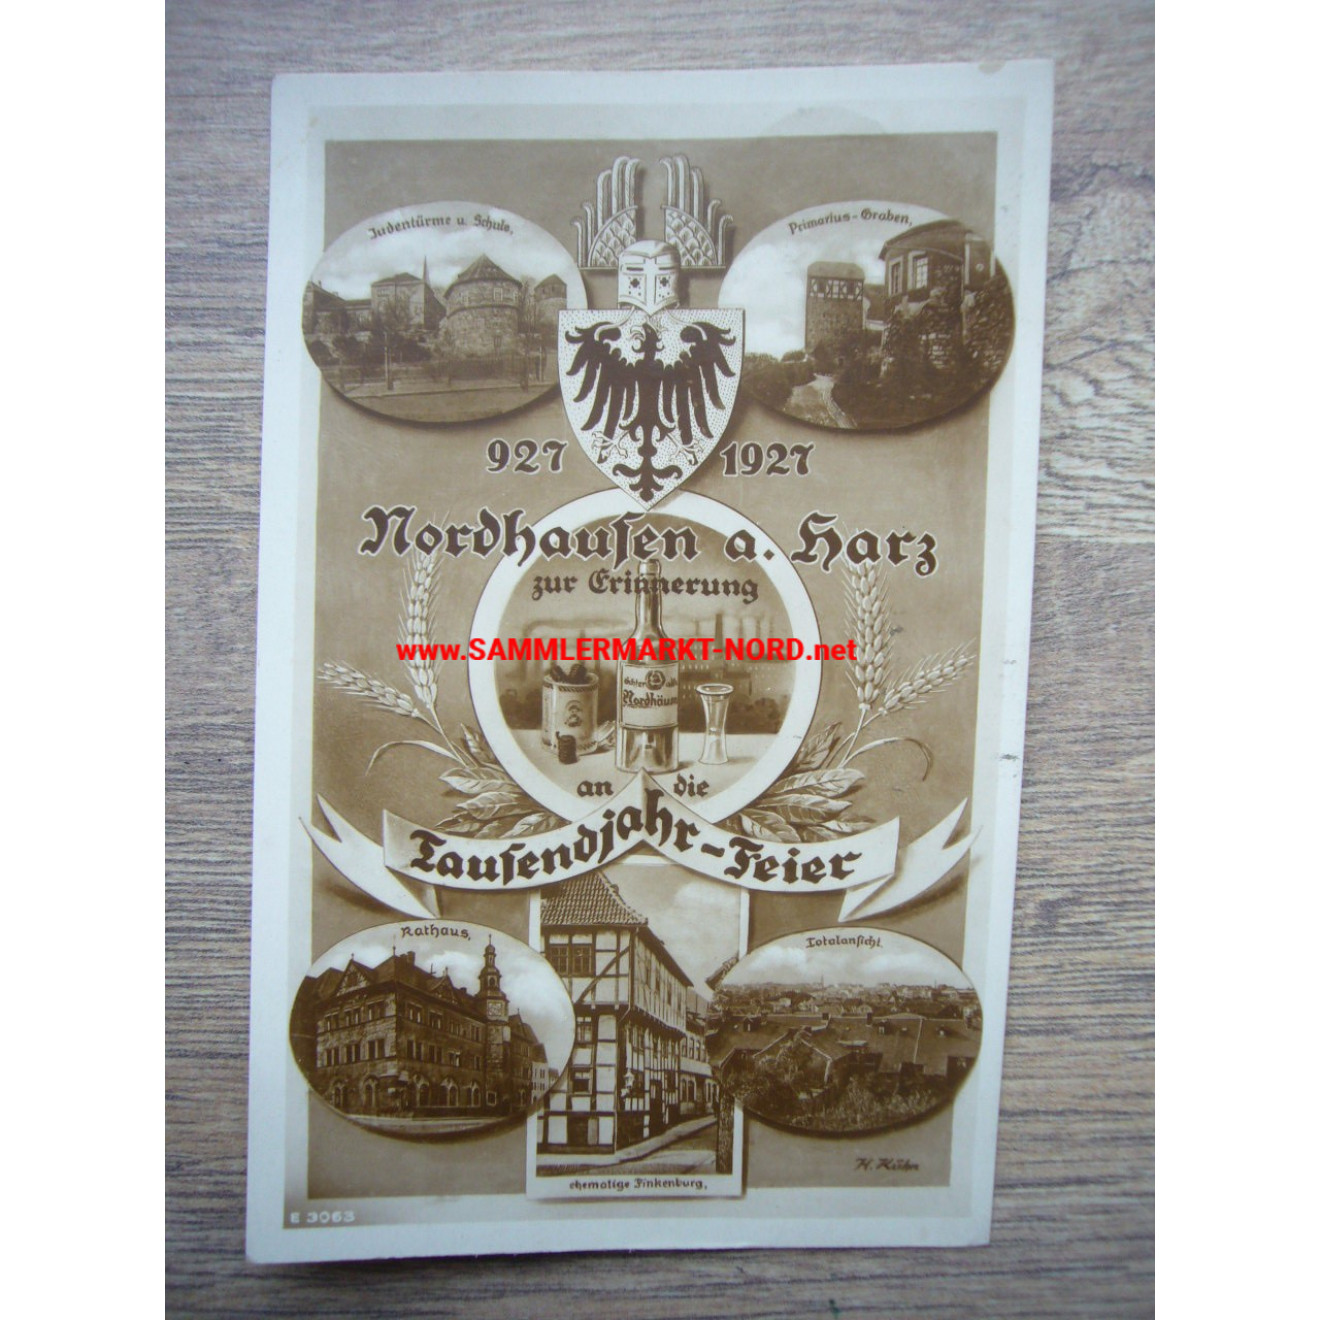 Nordhausen am Harz - Zur Erinnerung an die 1000 Jahrfeier 927 - 1927